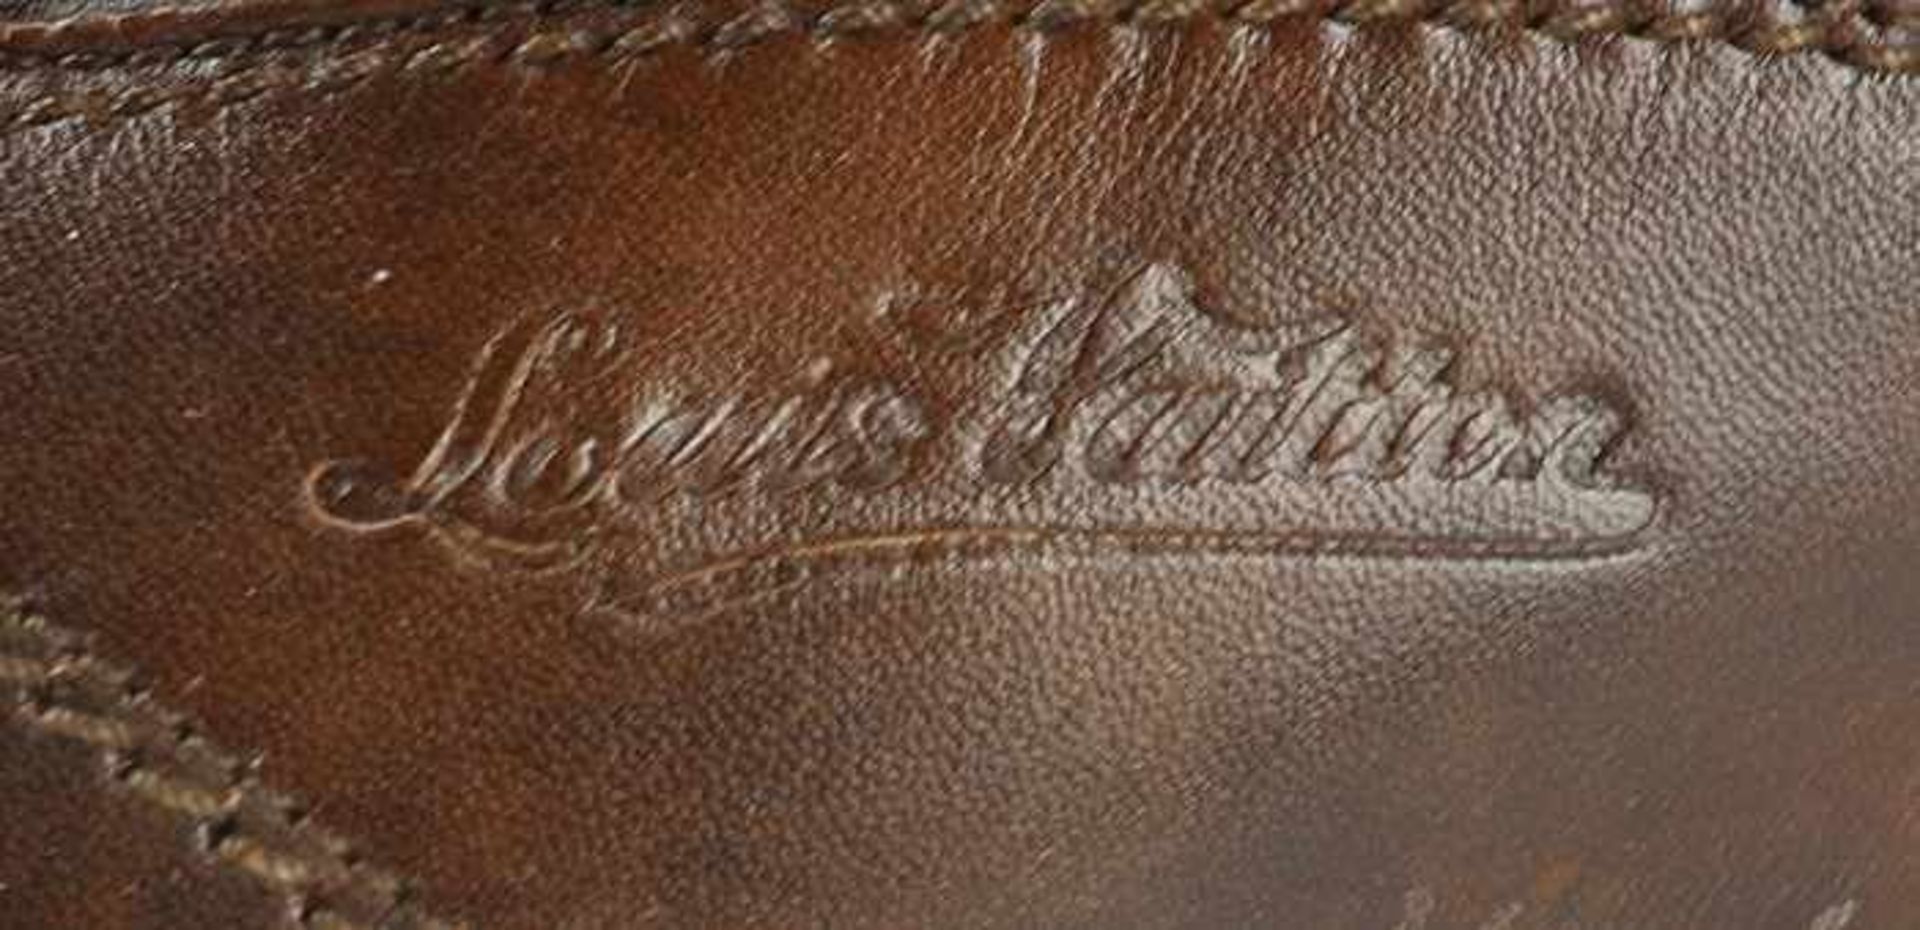 Louis Vuitton - HerrenschuheItalien, braunes Leder, sportliches Modell, OK, mit Staubbeutel u. - Bild 4 aus 8